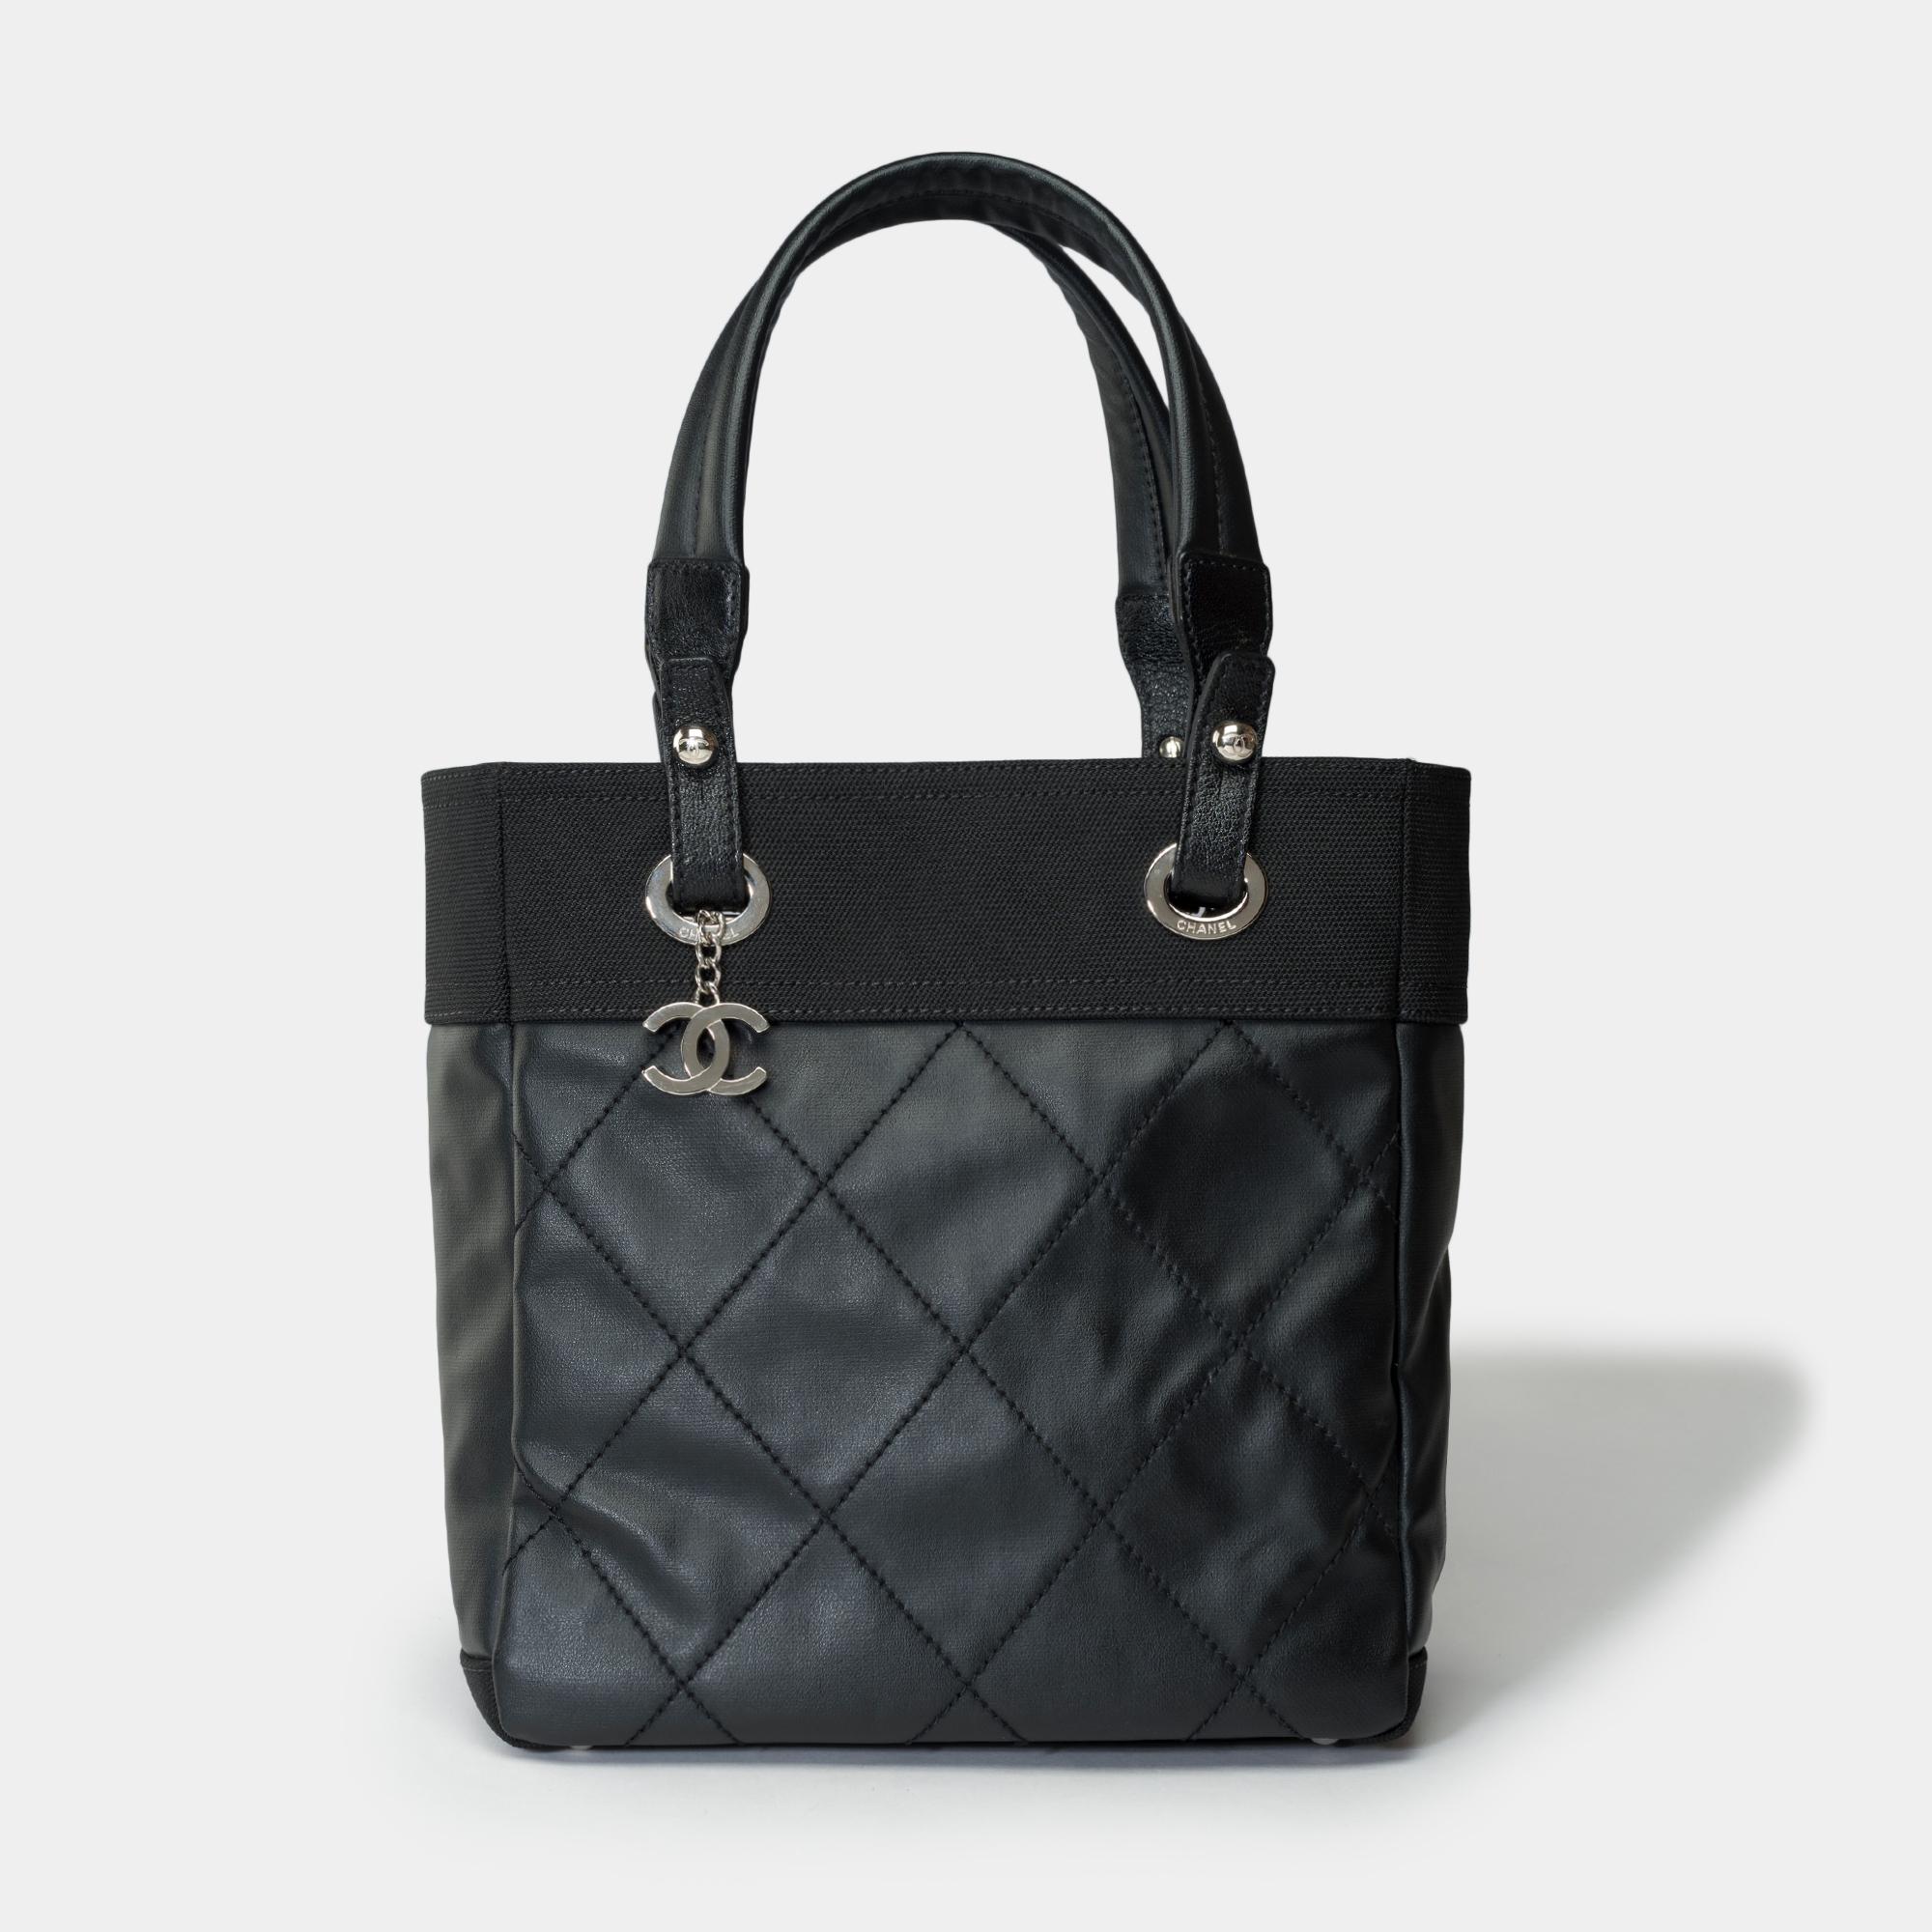 Elegant sac fourre-tout Chanel Paris-Biarritz en toile enduite noire et toile noire, garniture en métal argenté, double poignée en toile noire pour un portage à la main ou à l'épaule.

Une fermeture éclair
Doublure intérieure en toile noire, une